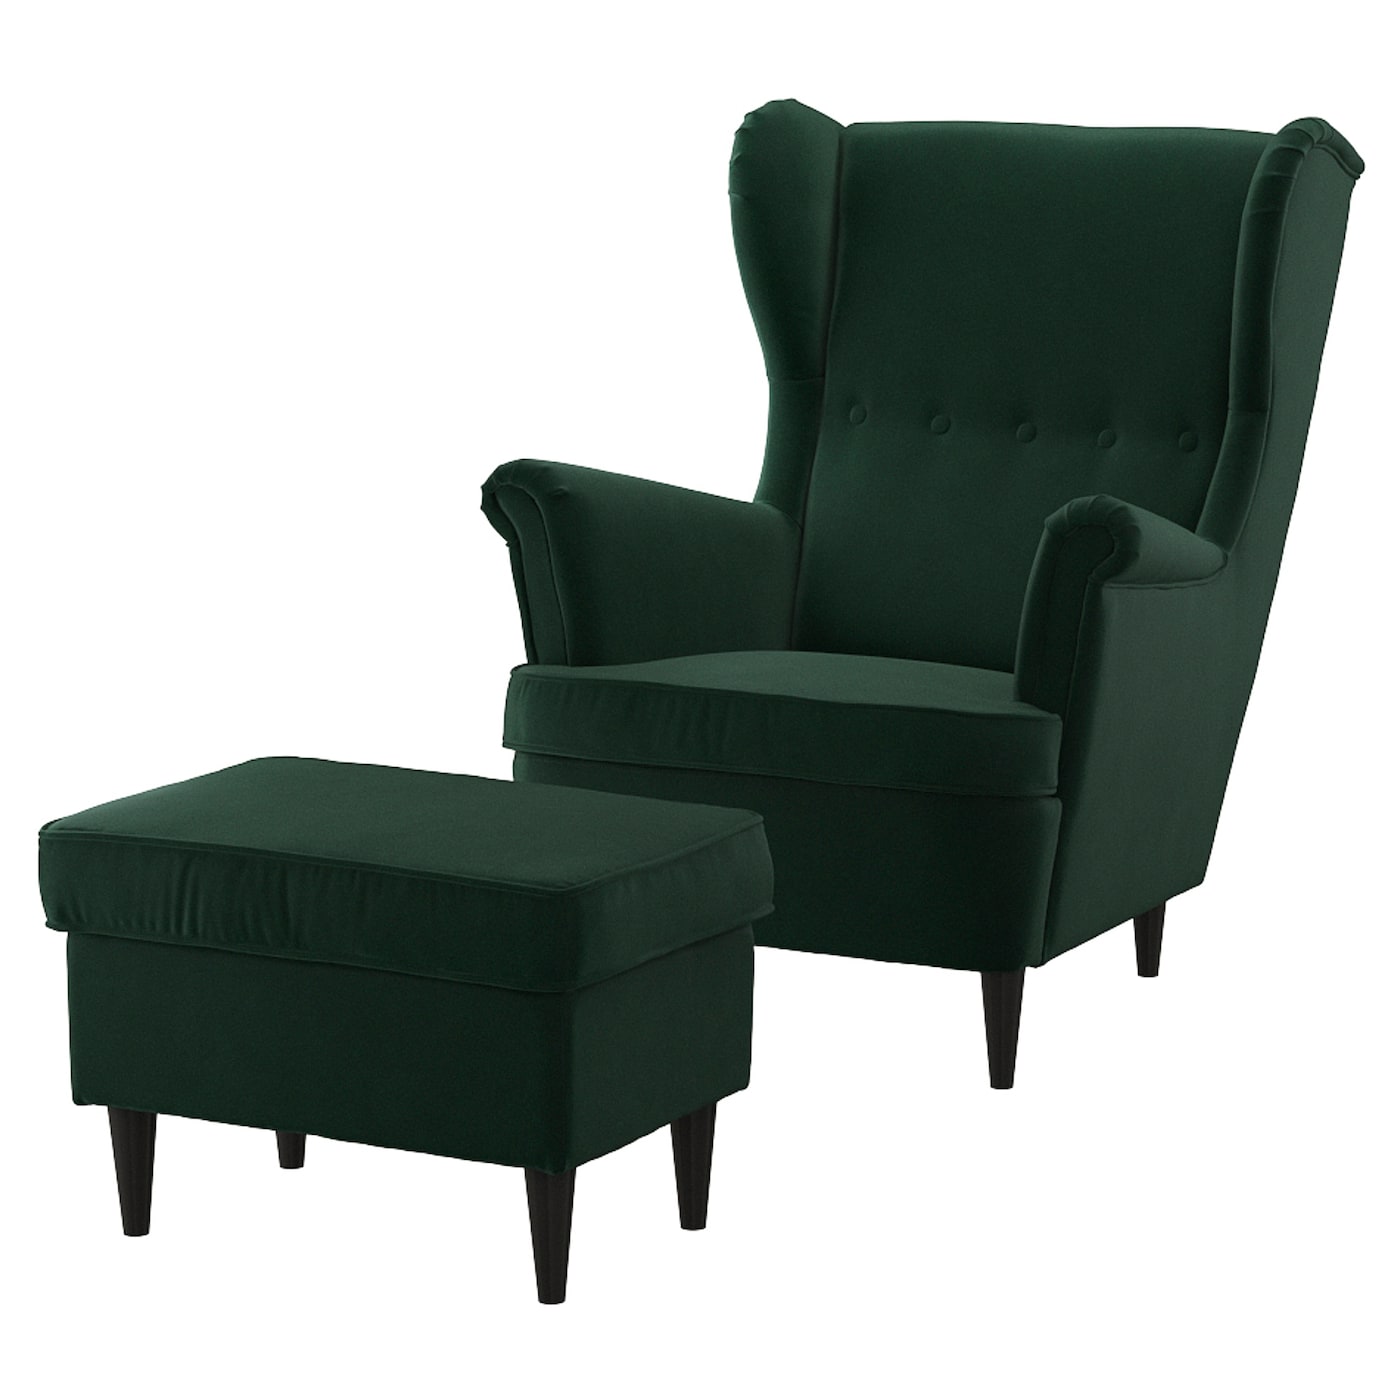 СТРАНДМОН Кресло и подставка для ног, Дьюпарп темно-зеленый STRANDMON IKEA